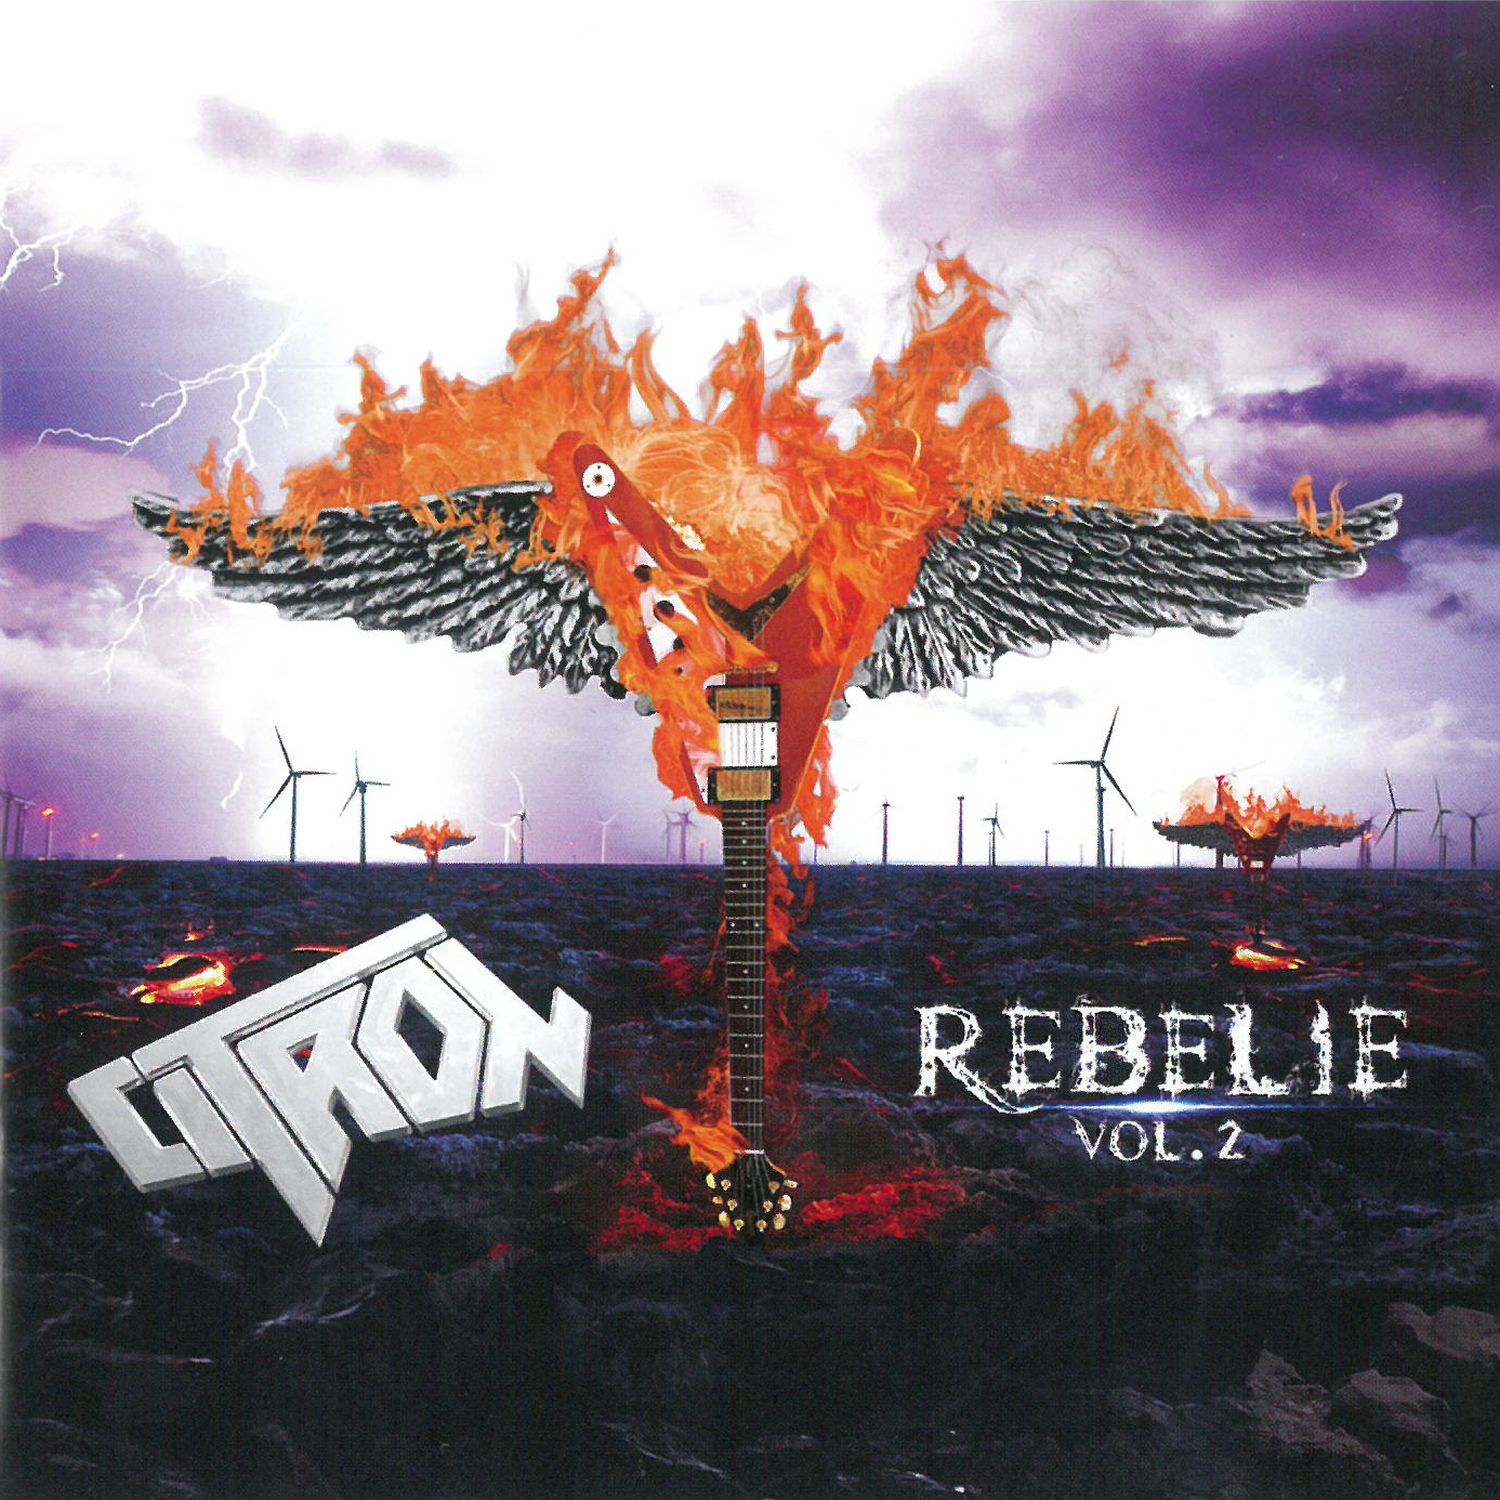 CD Shop - CITRON REBELIE VOL.2 (EP)